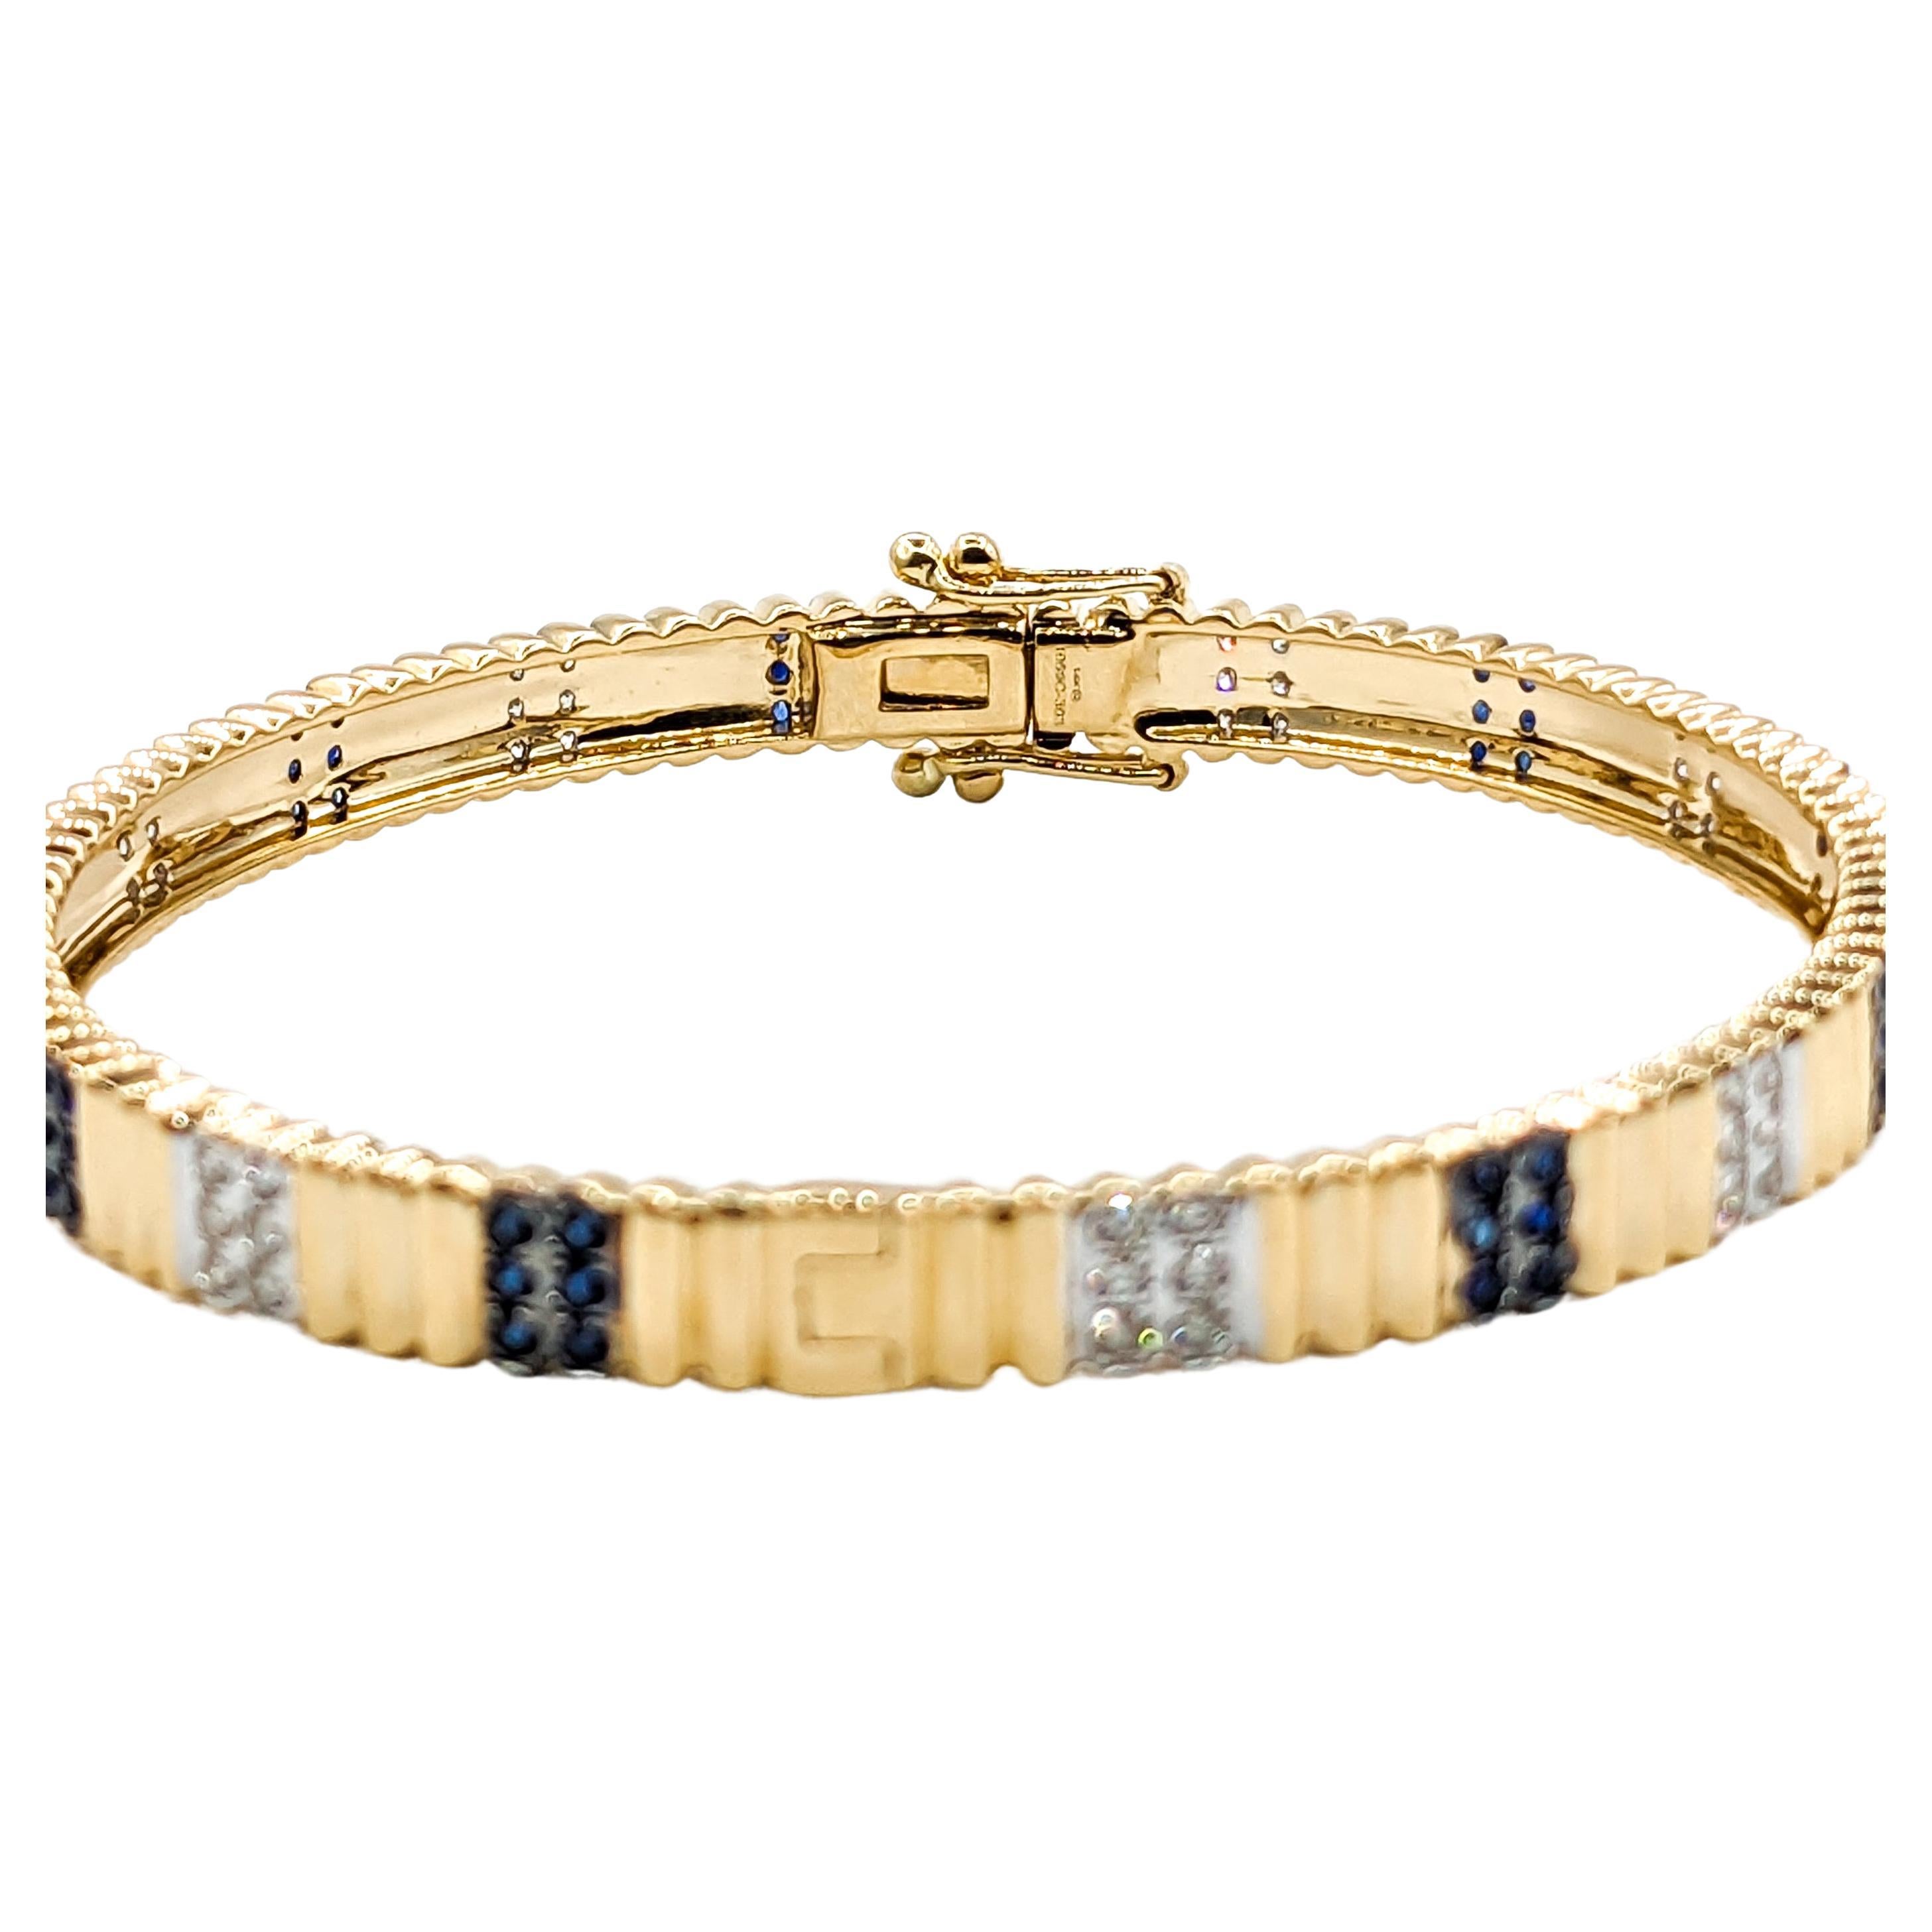 Bracelet en or jaune avec diamants et saphirs

Voici notre superbe bracelet, symbole d'élégance et de sophistication. Réalisée en or jaune 14 carats, cette pièce exquise est un mélange parfait de style moderne et de grâce intemporelle. Le bracelet